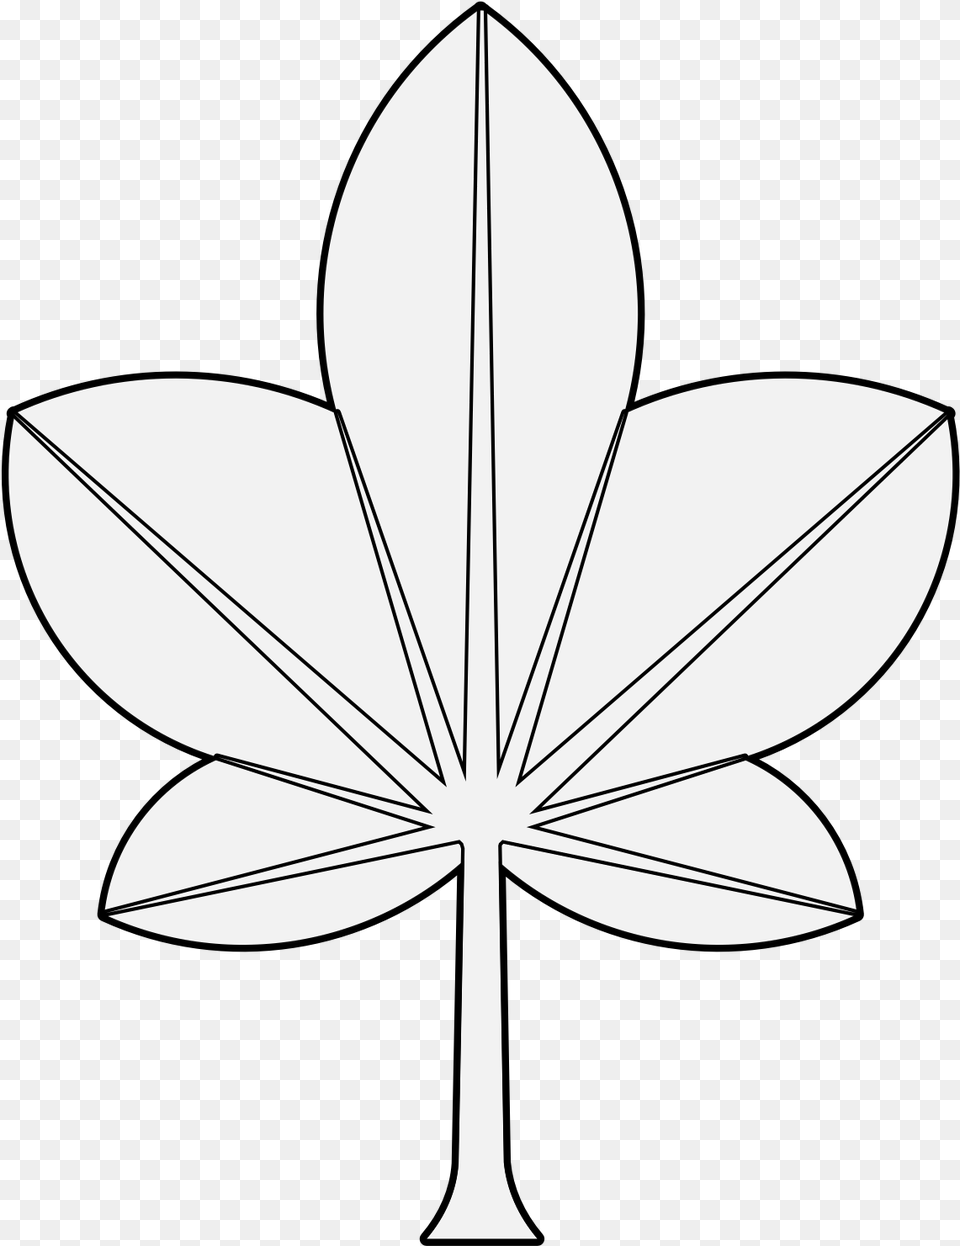 Flower, Leaf, Plant, Stencil, Animal Png Image